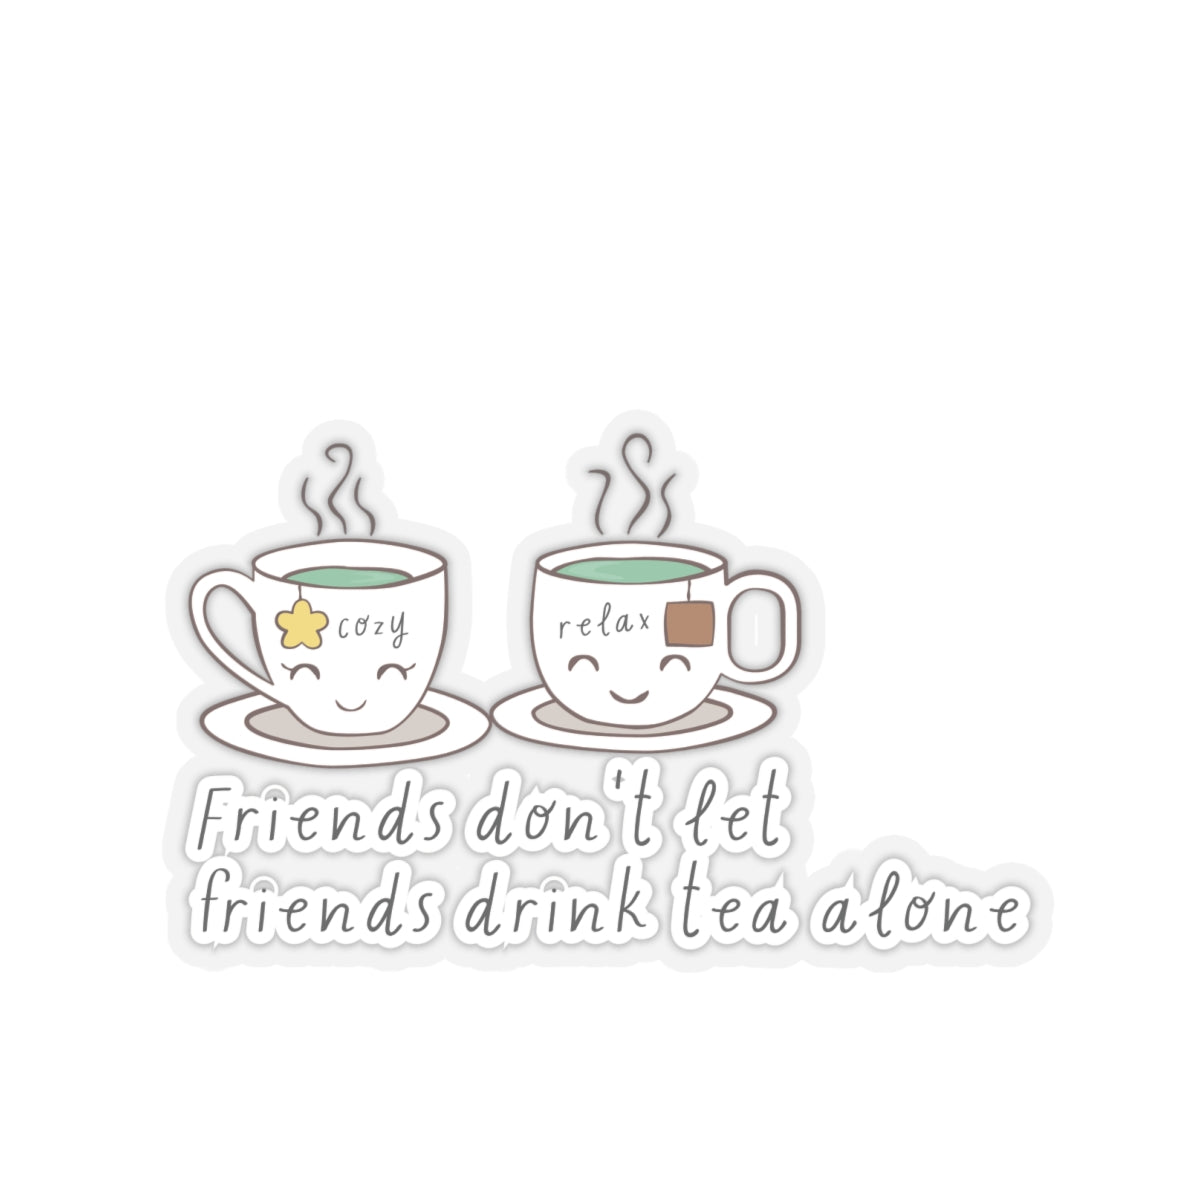 Friends Don't Let Friend Drink Tea Alone Kiss-Cut Stickers-Paper products-6" × 6"-Transparent-mysticalcherry